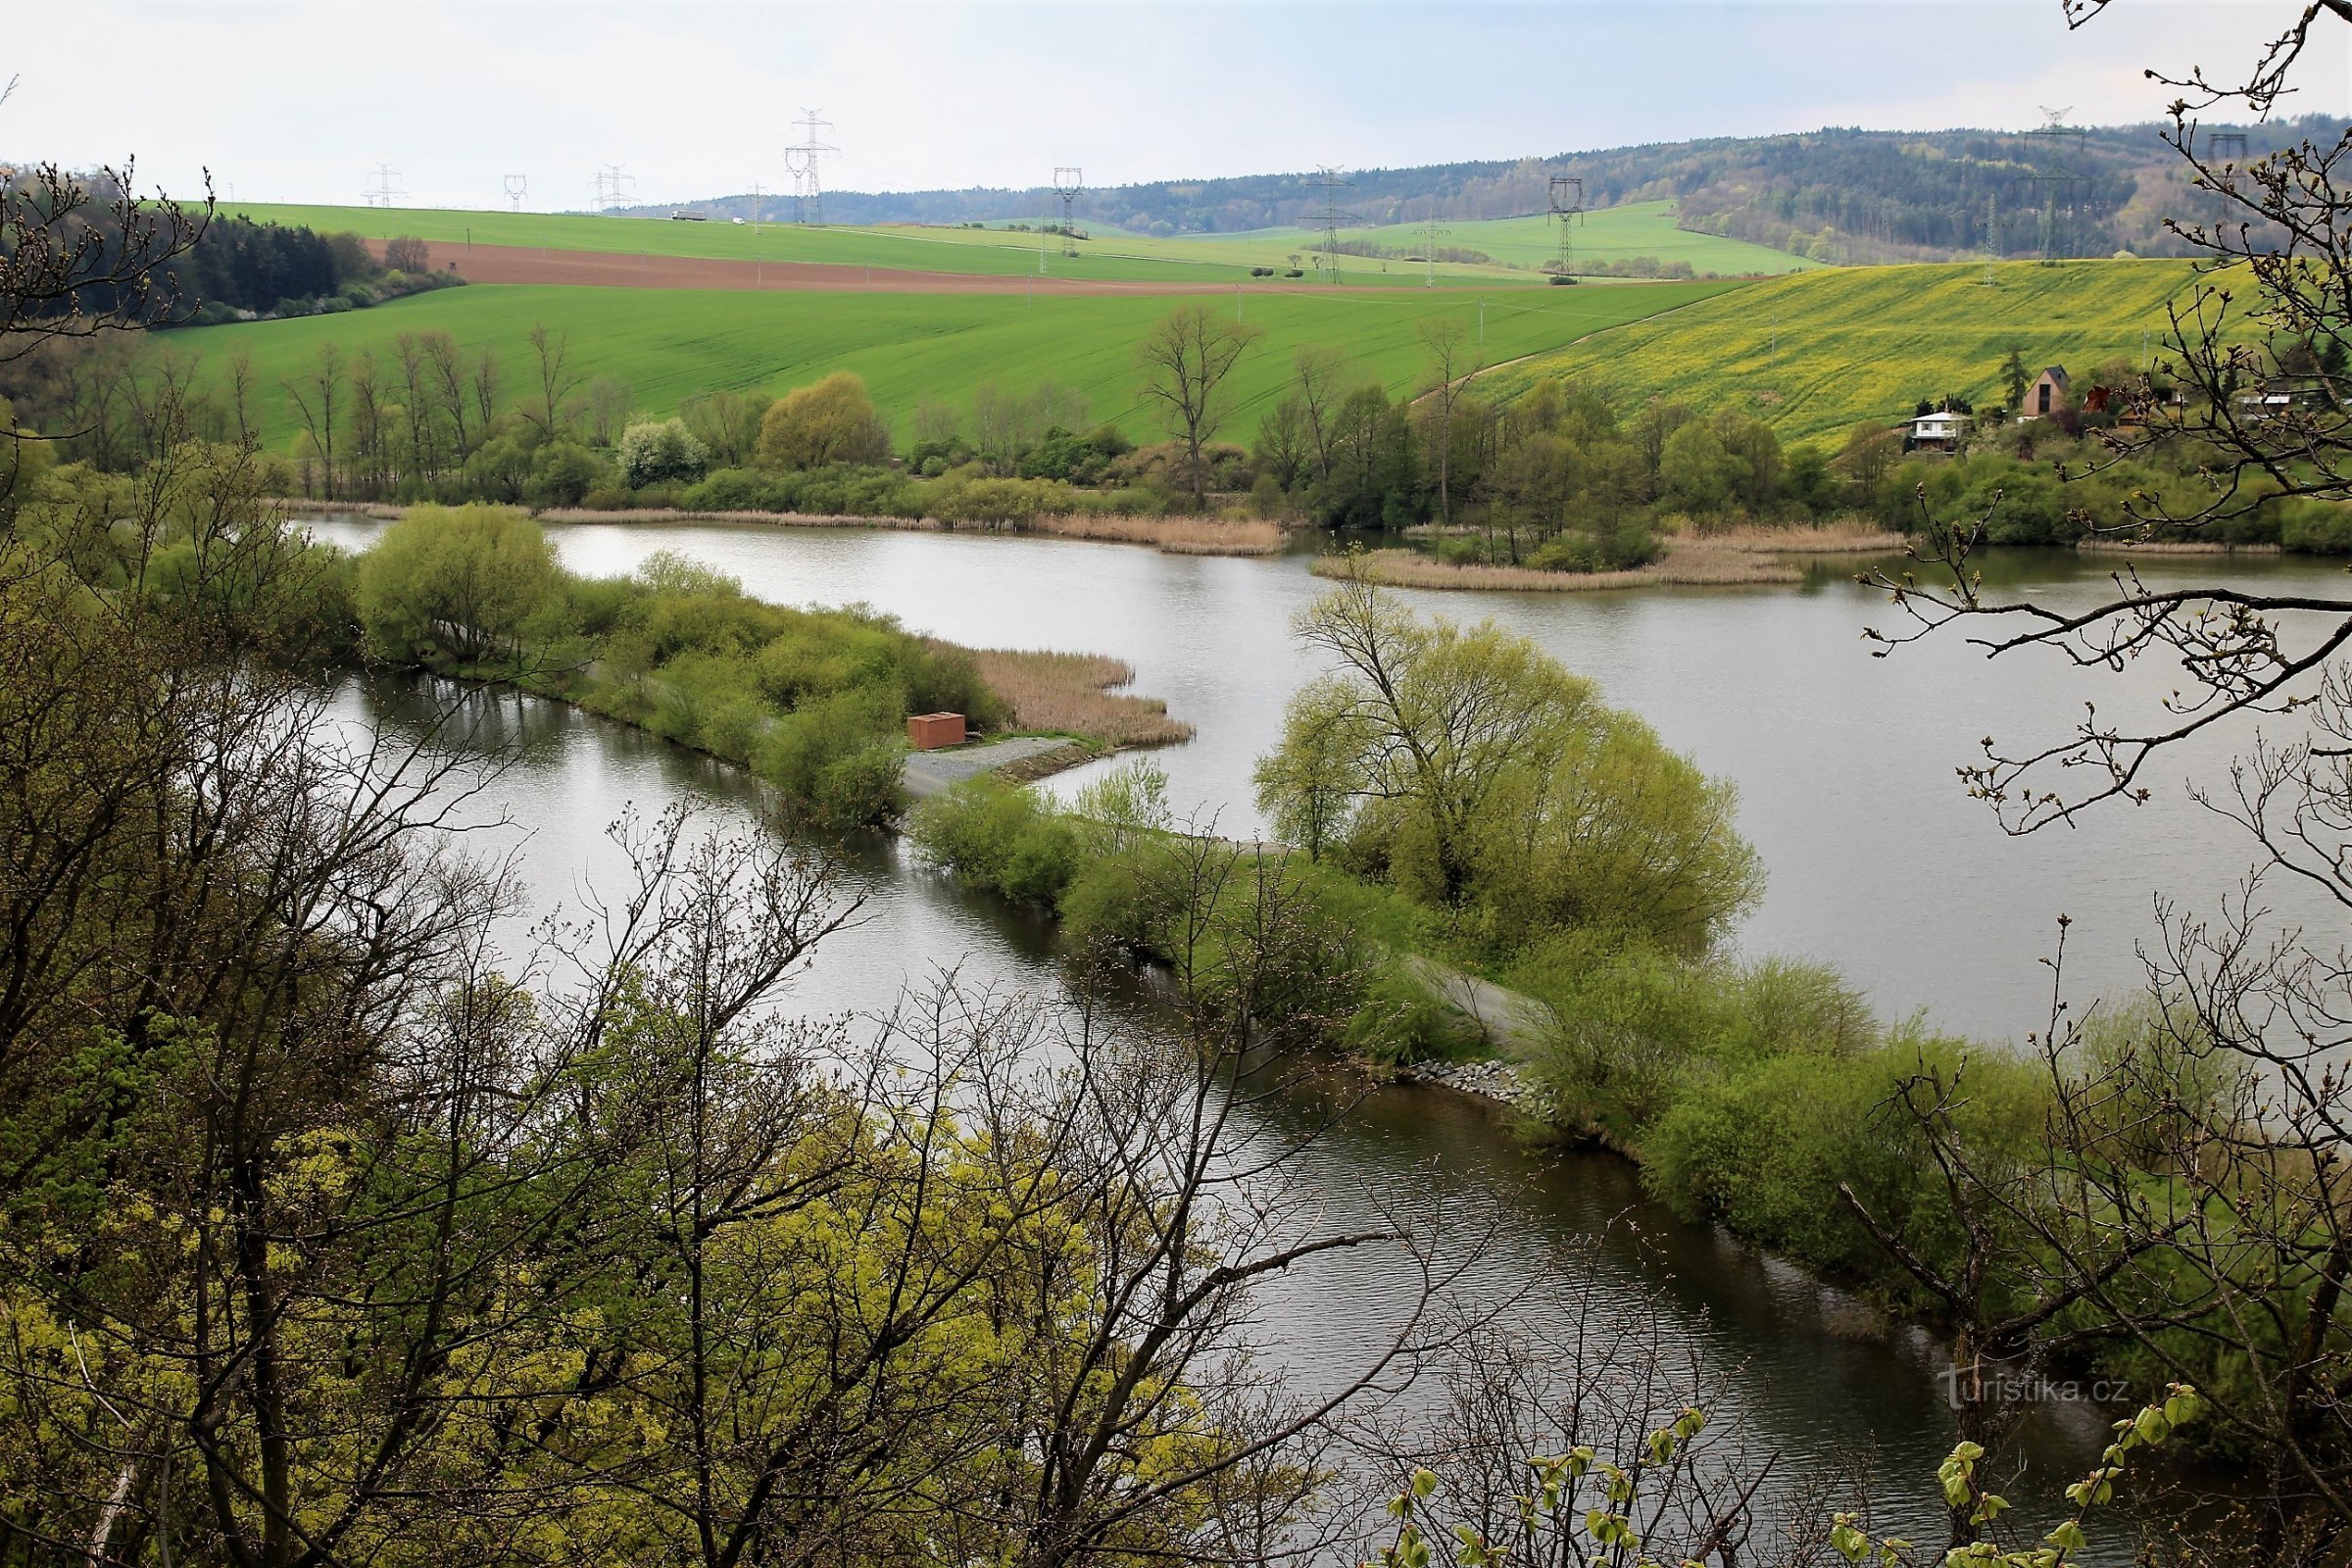 Quang cảnh đầm lầy từ điểm quan sát trên điểm đánh dấu màu vàng, ở phía trước là cuối con đê trên sông Svratka